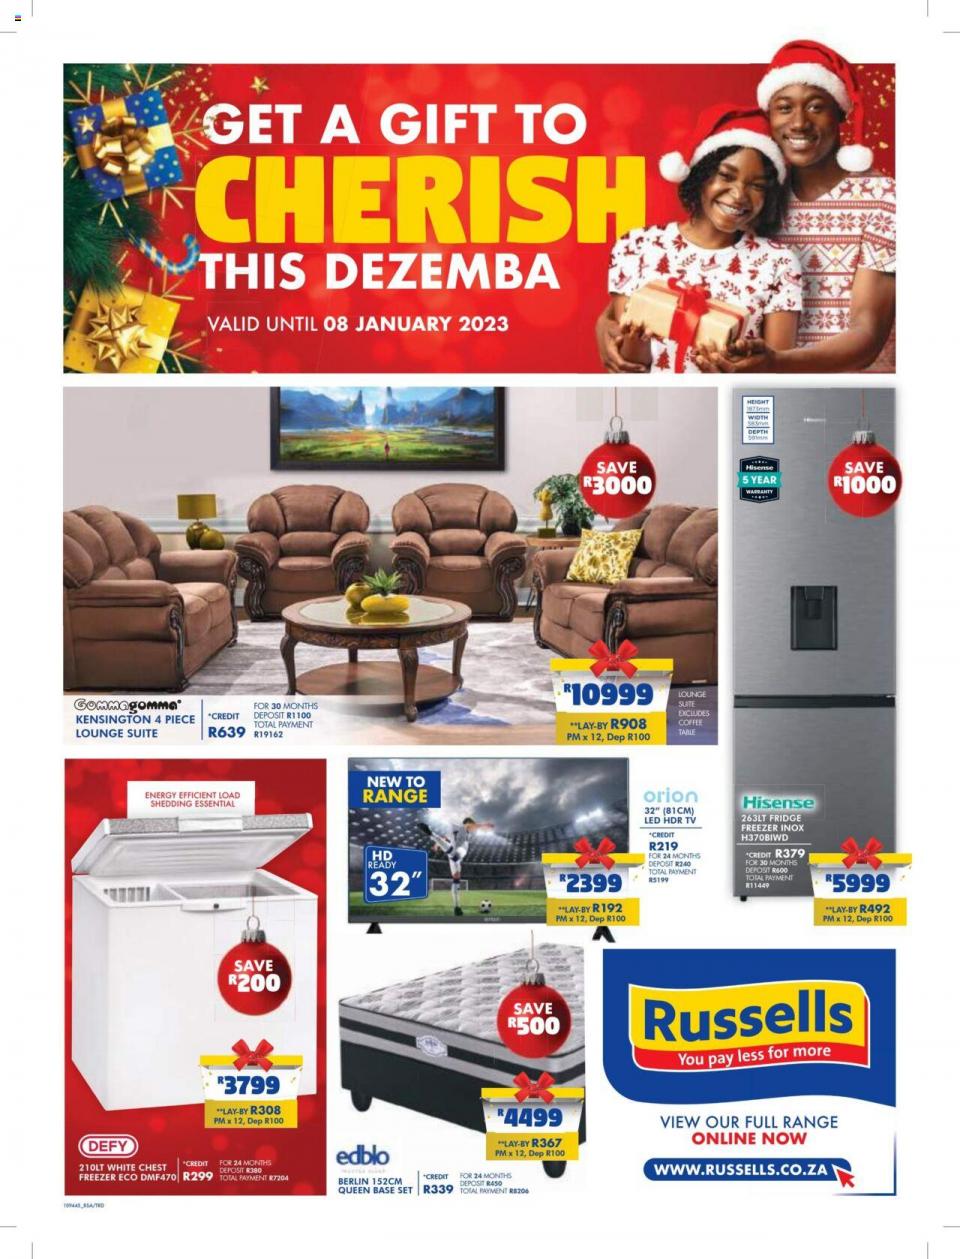 Russells Catalogue 5 Dec 2022 Russells Specials Christmas Deals